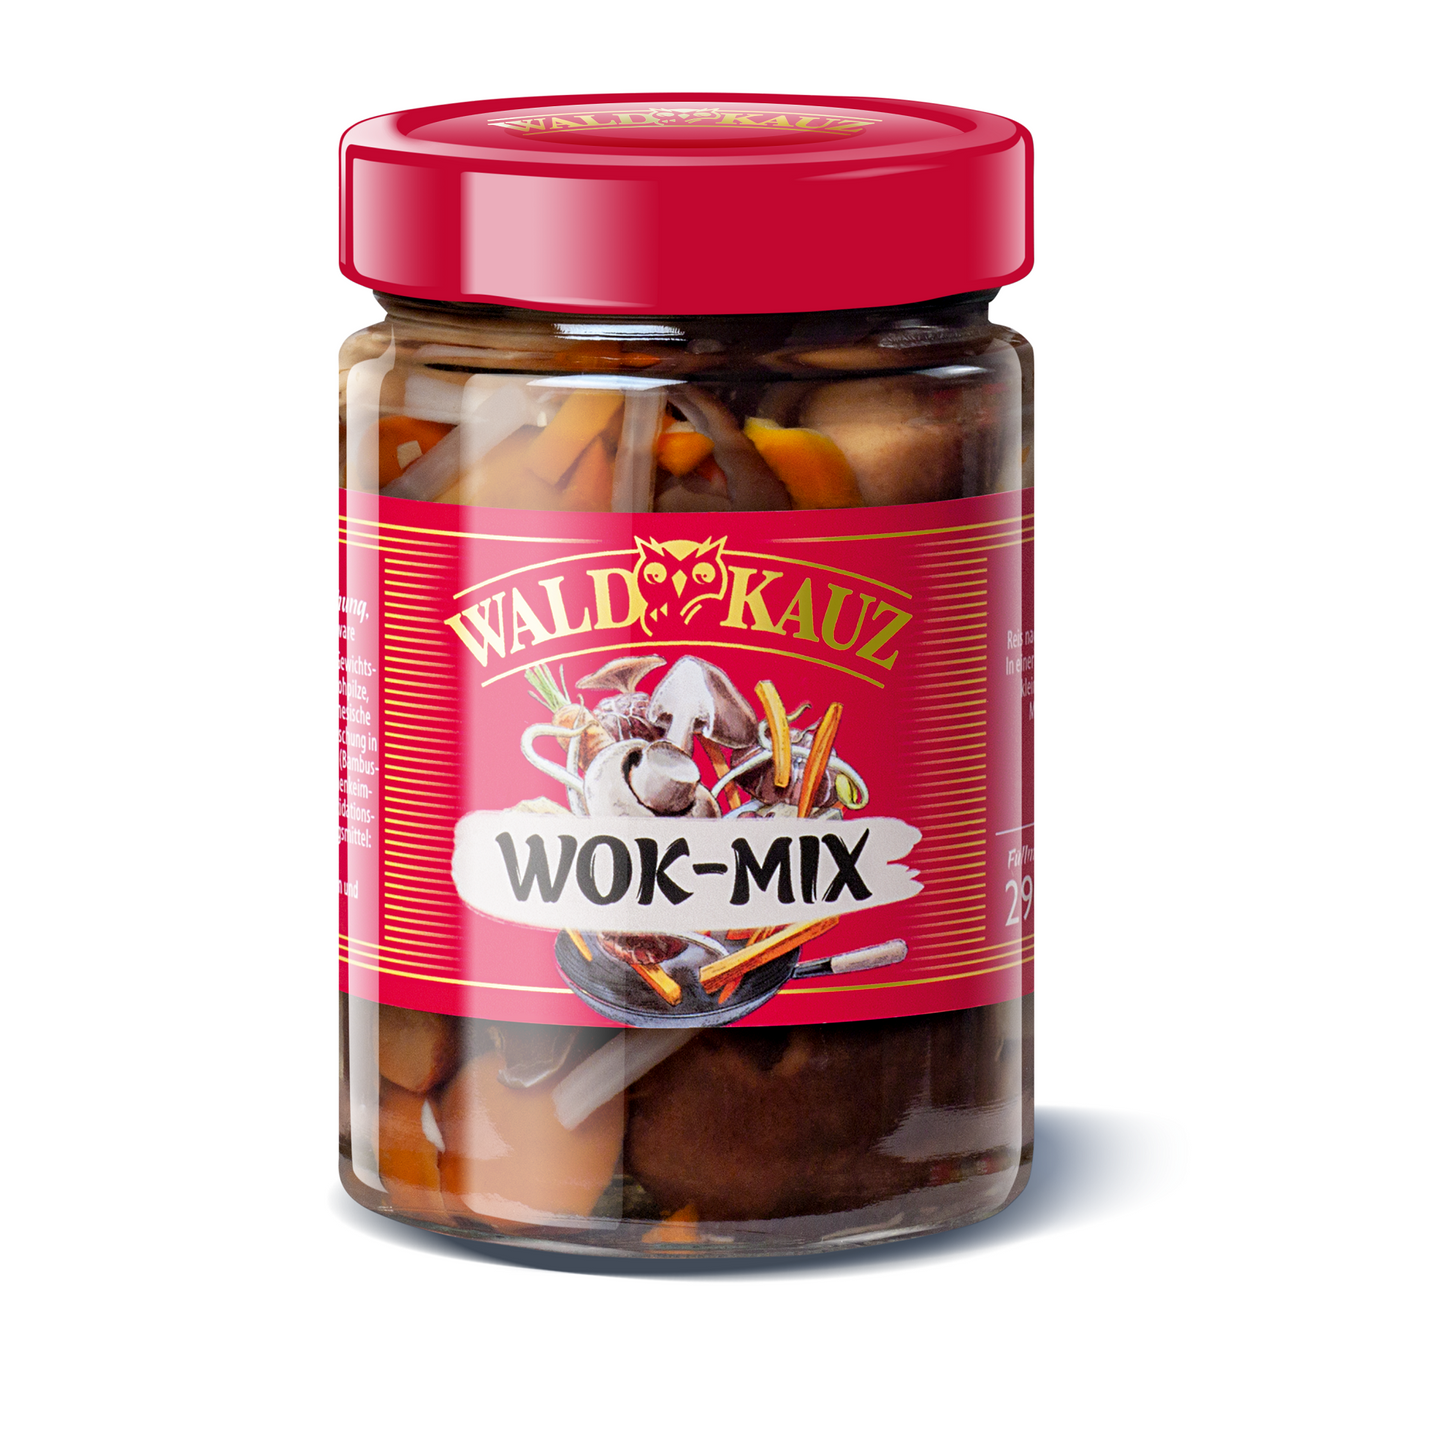 Waldkauz WOK - Mix 290g